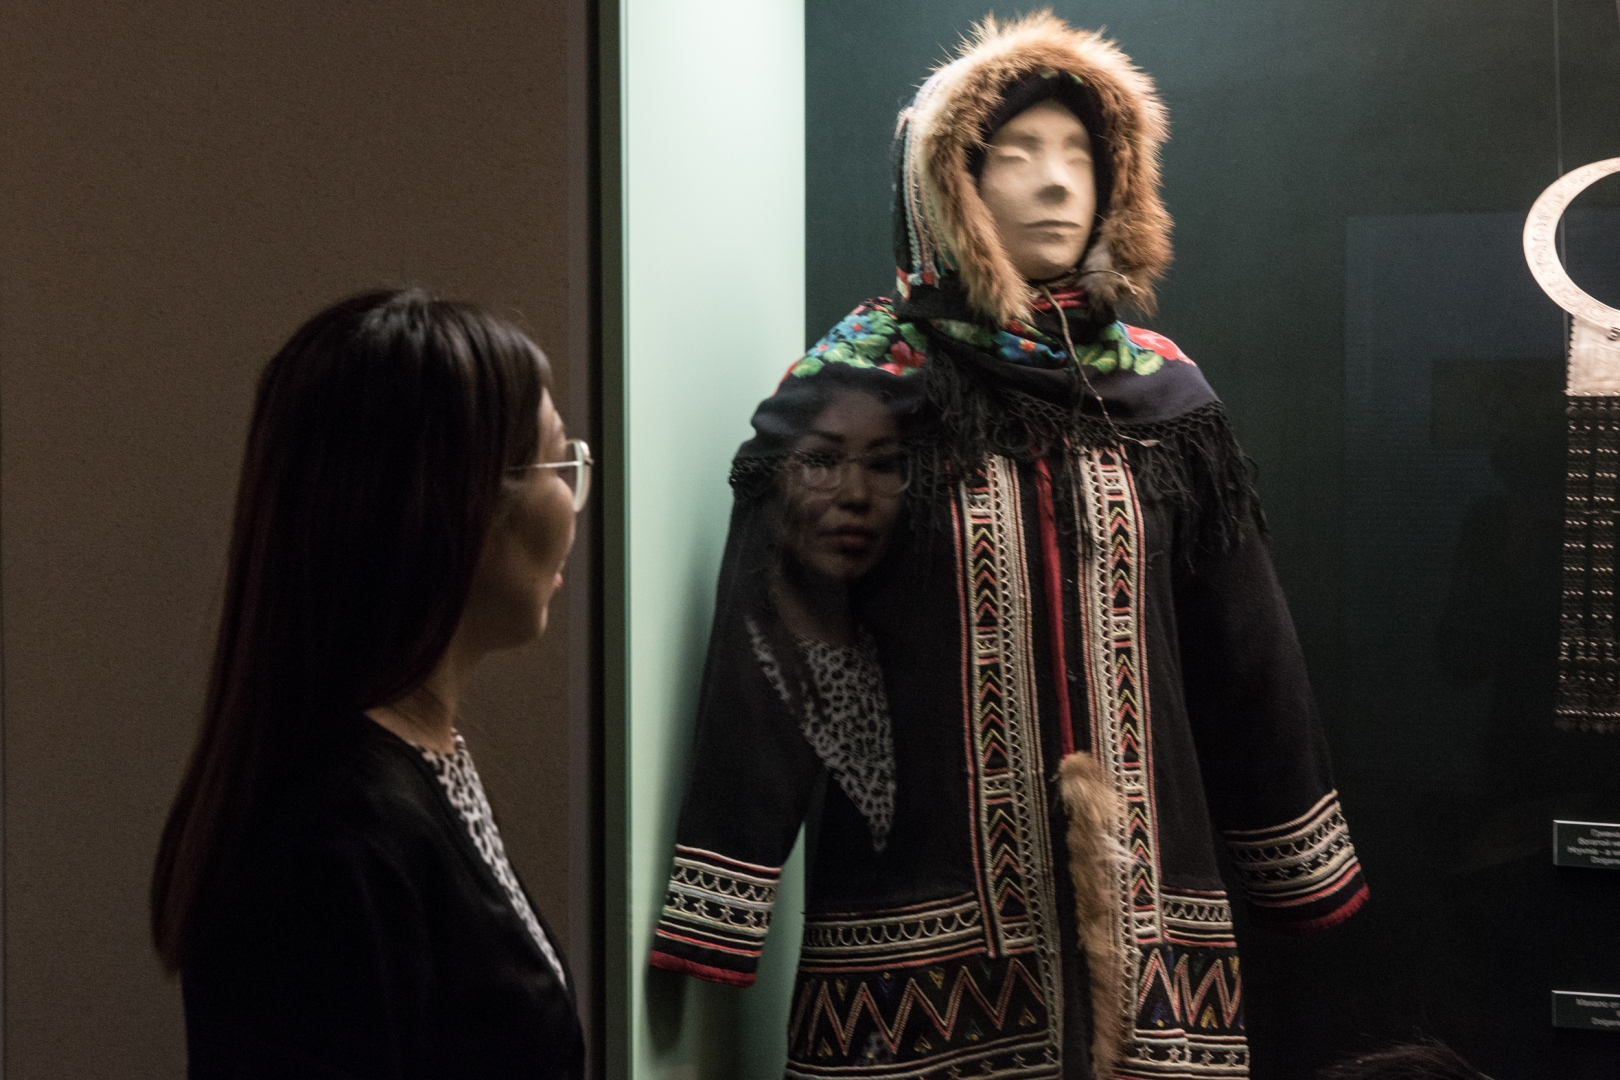 Национальные костюмы коренного народа Таймыра — долган. Белла Чуприна — экскурсовод по местному музею Дудинки. По происхождению она из народа долган